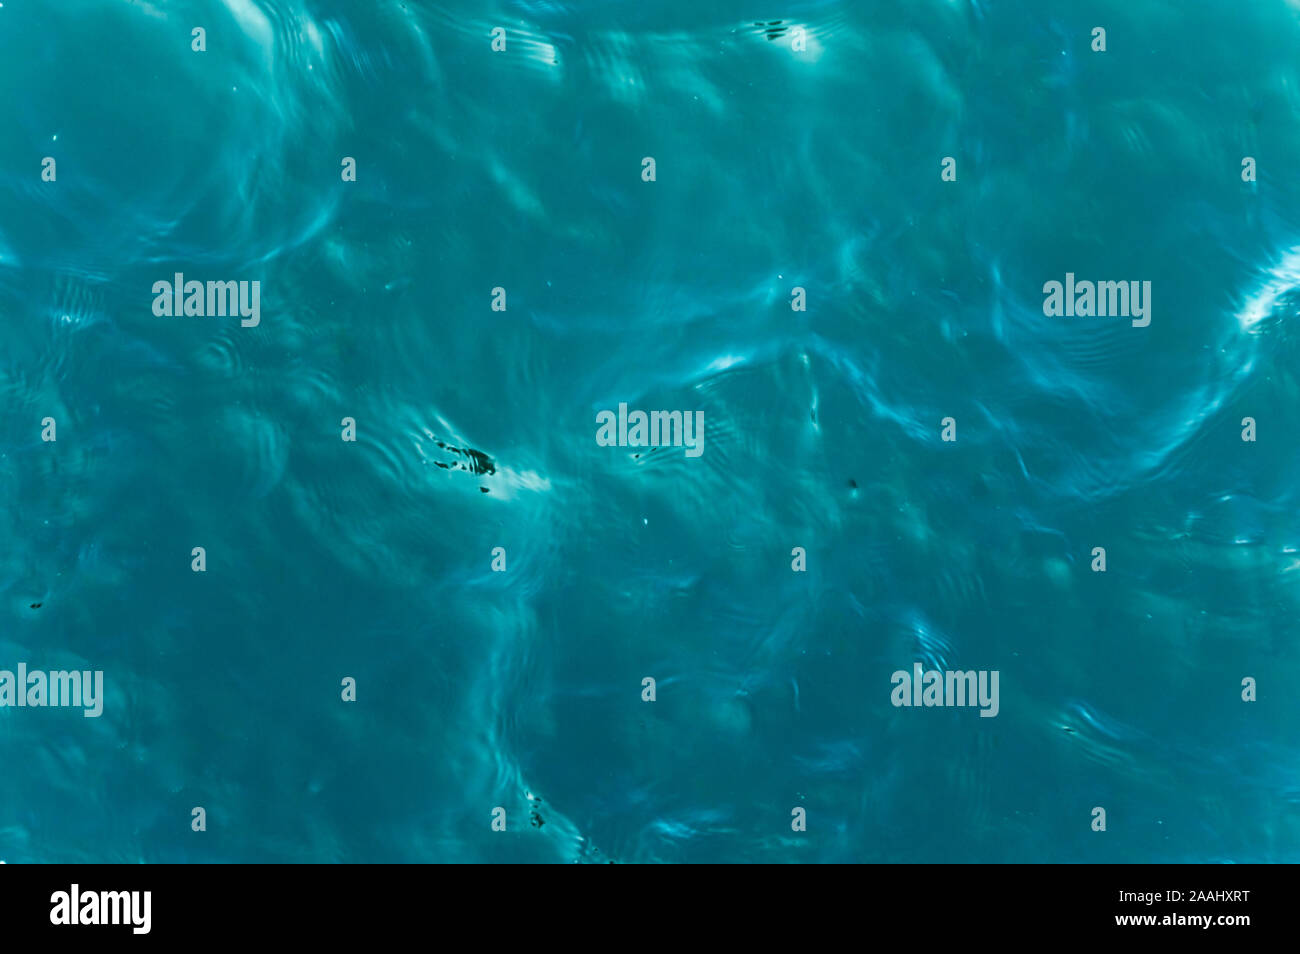 Vue de dessus d'un bleu profond de la mer calme avec des ondulations sur la surface de l'eau. Banque D'Images